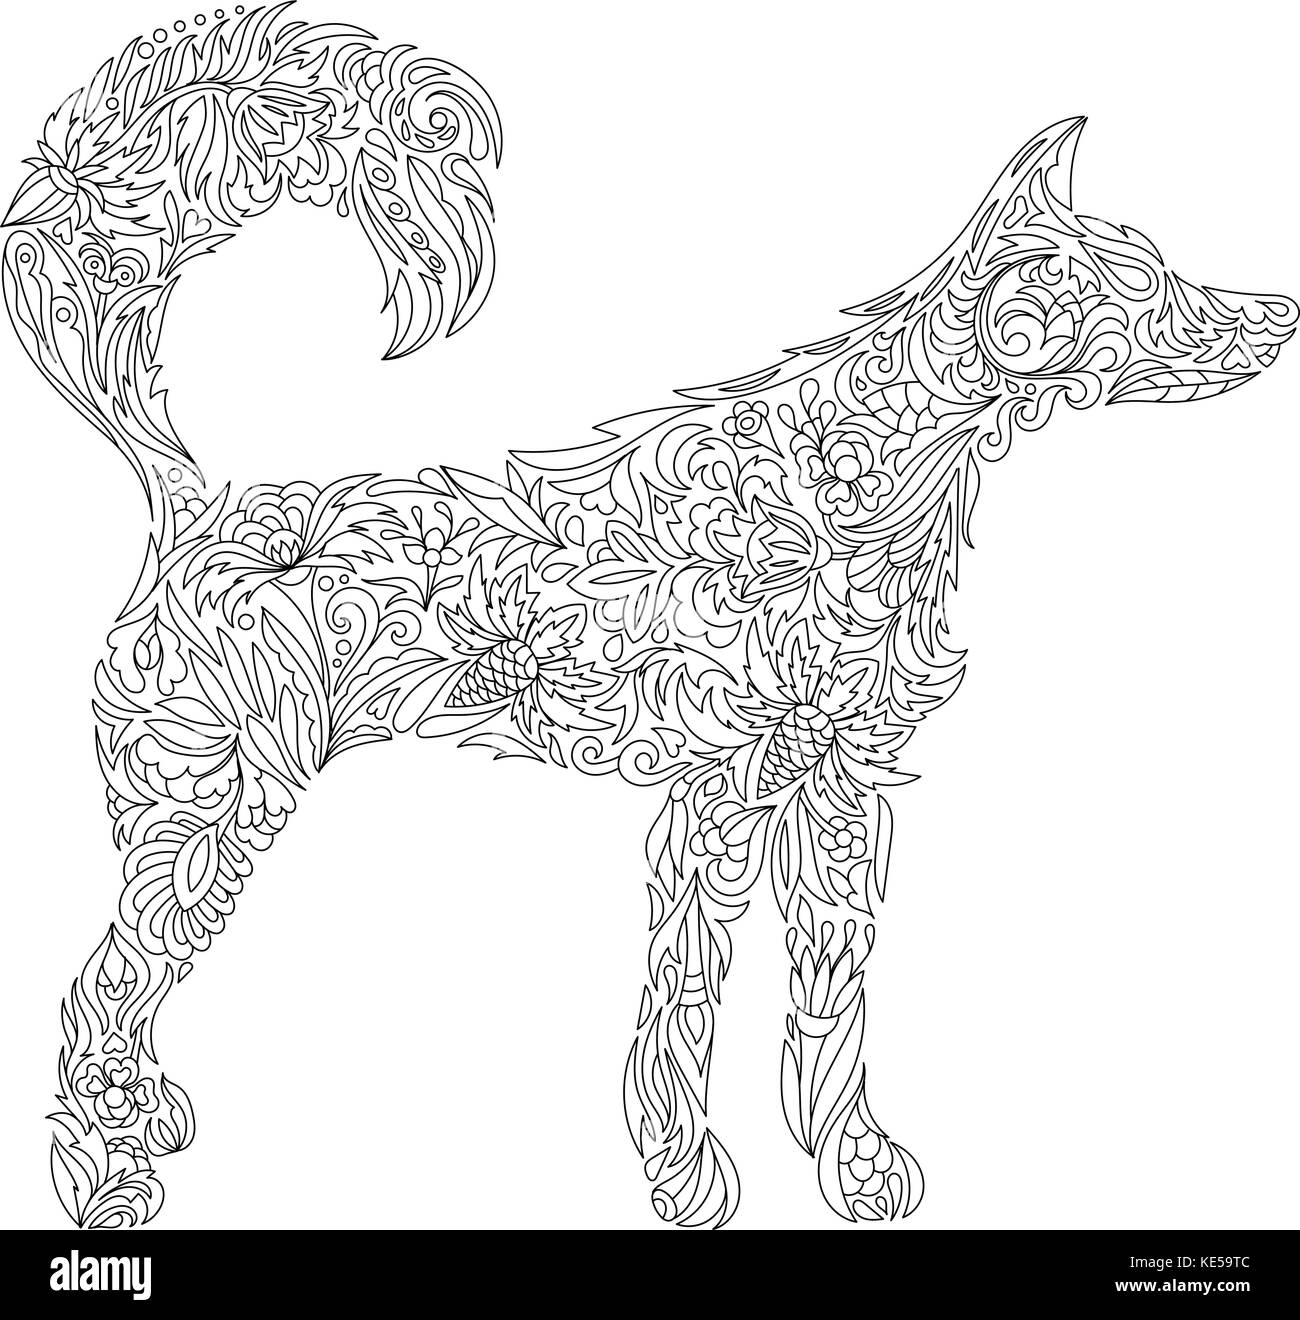 Cane. zentangle. stilizzata cane. freehand sketch con cane per adulto anti stress libro da colorare pagina Illustrazione Vettoriale